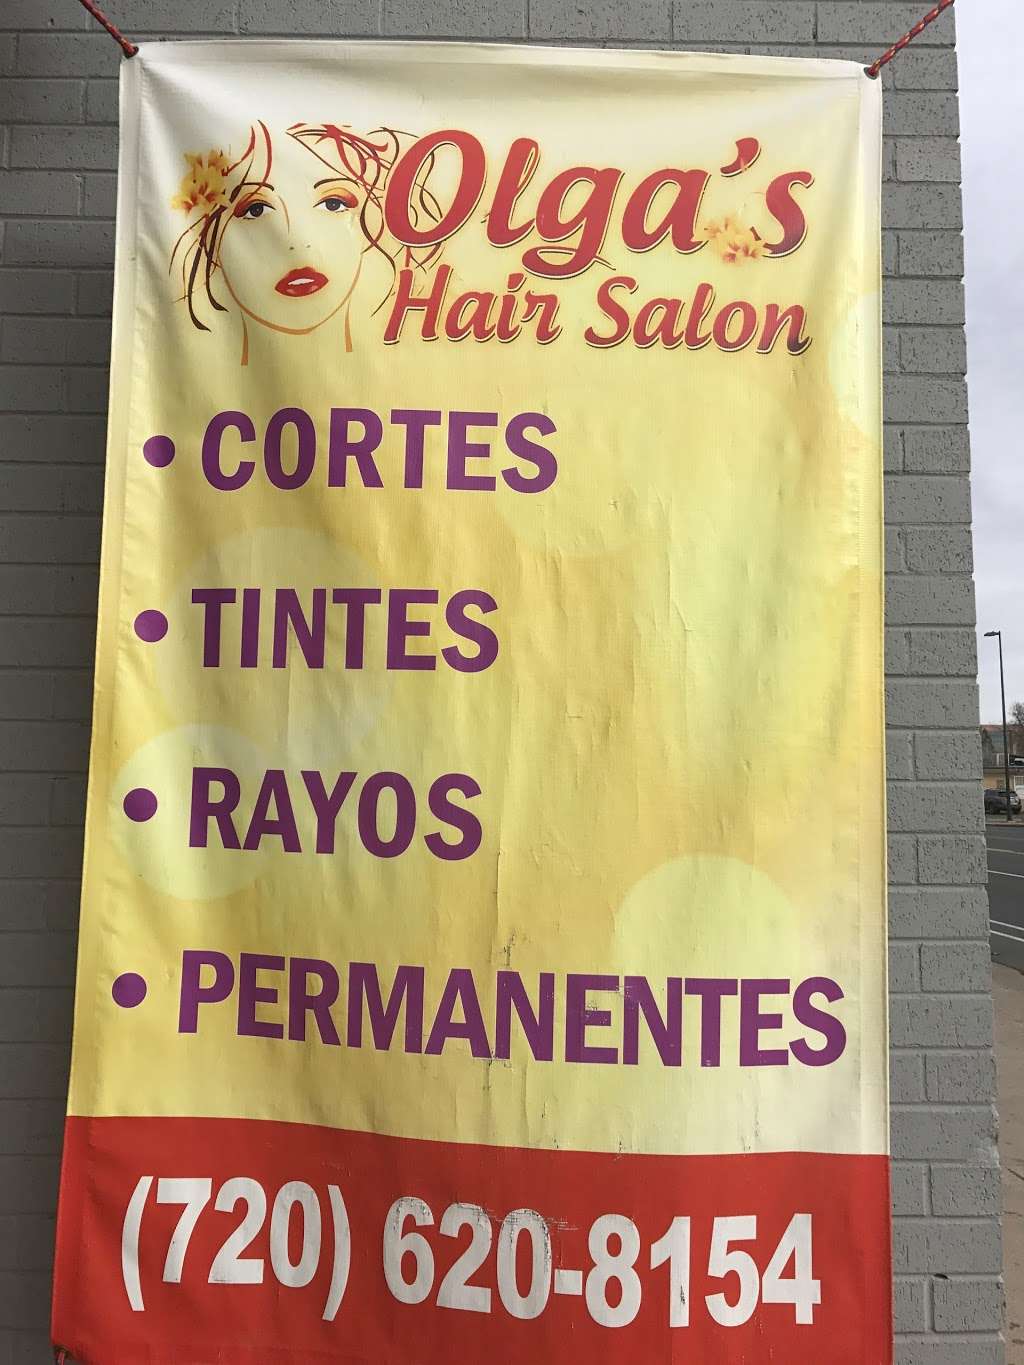 Olgas Hair Salon | 11641 E Montview Blvd, Aurora, CO 80010, USA | Phone: (720) 620-8154